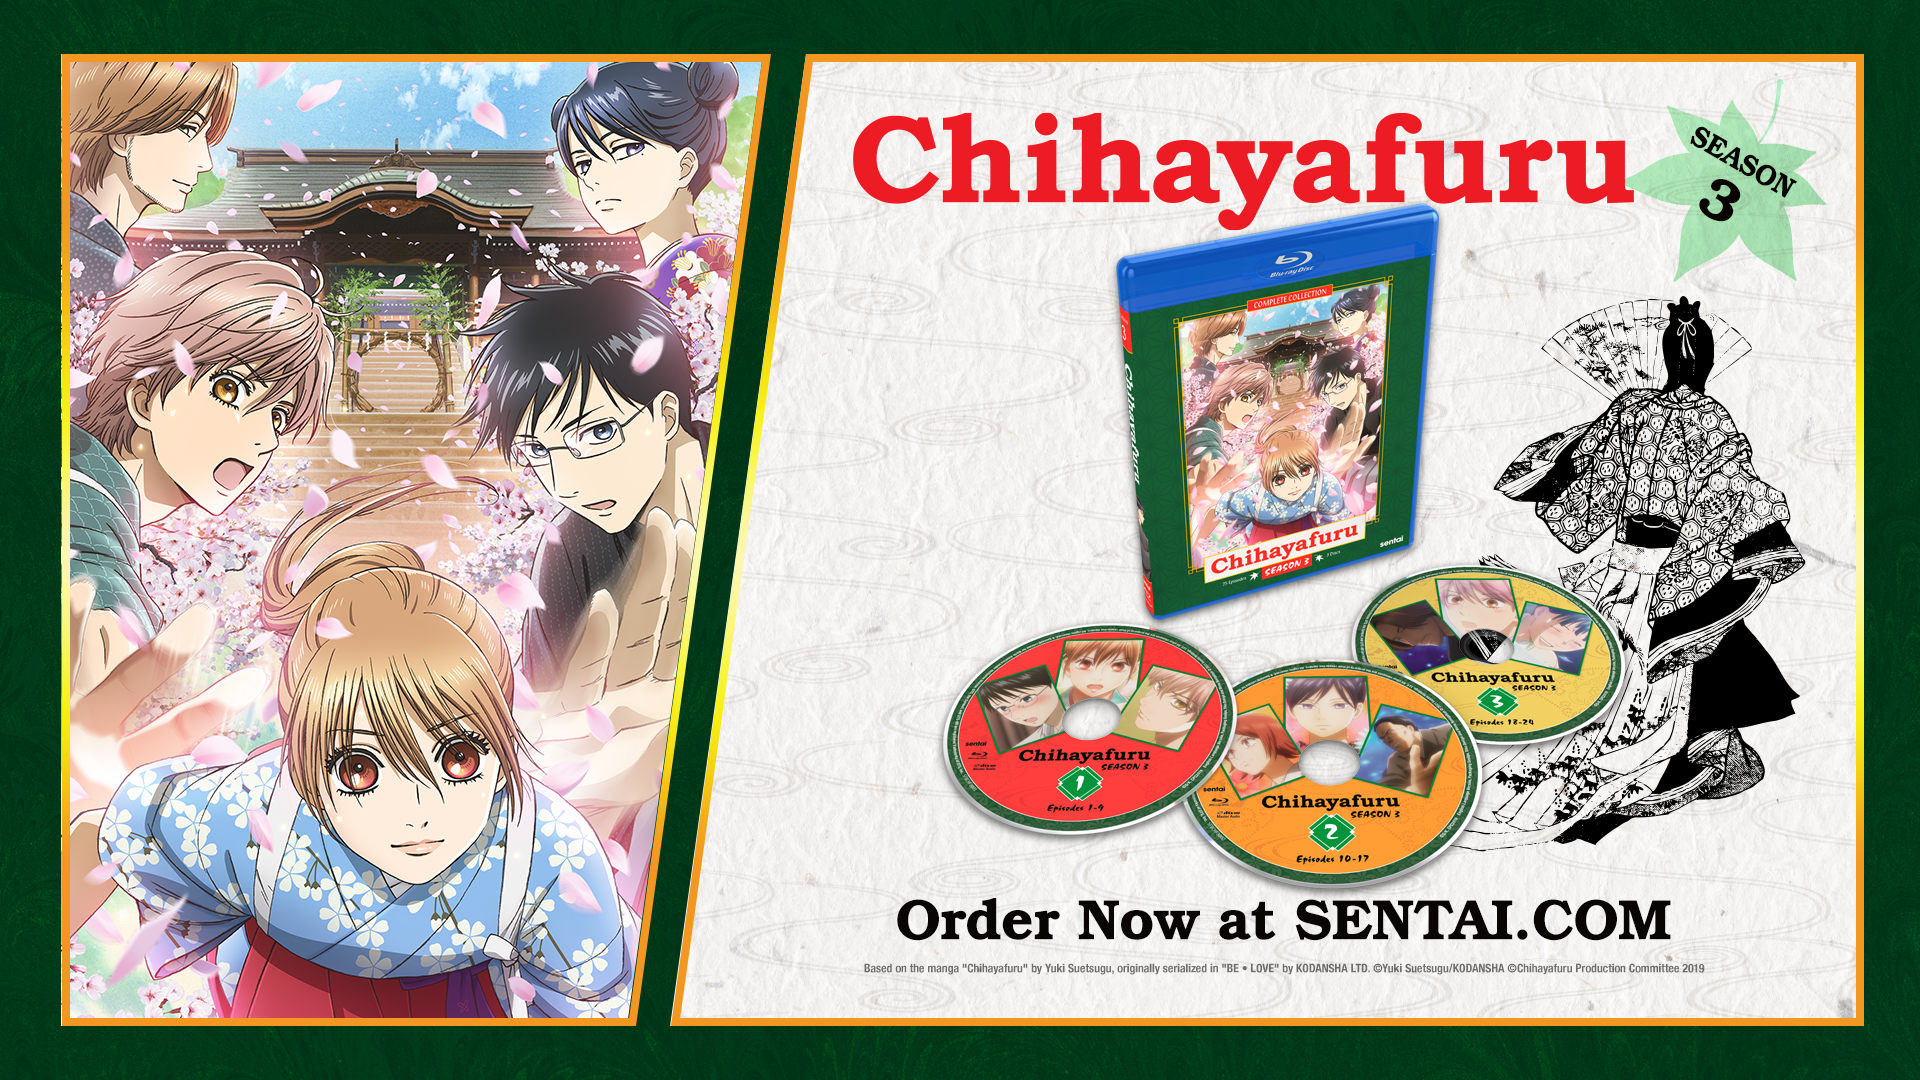 A picture of the Chihayafuru 3 Blu-ray along with Chihaya, Arata, Taichi, Shinobu and Hisashi. The text says, "Chihayafuru Season 3" and "Order now at sentai.com"